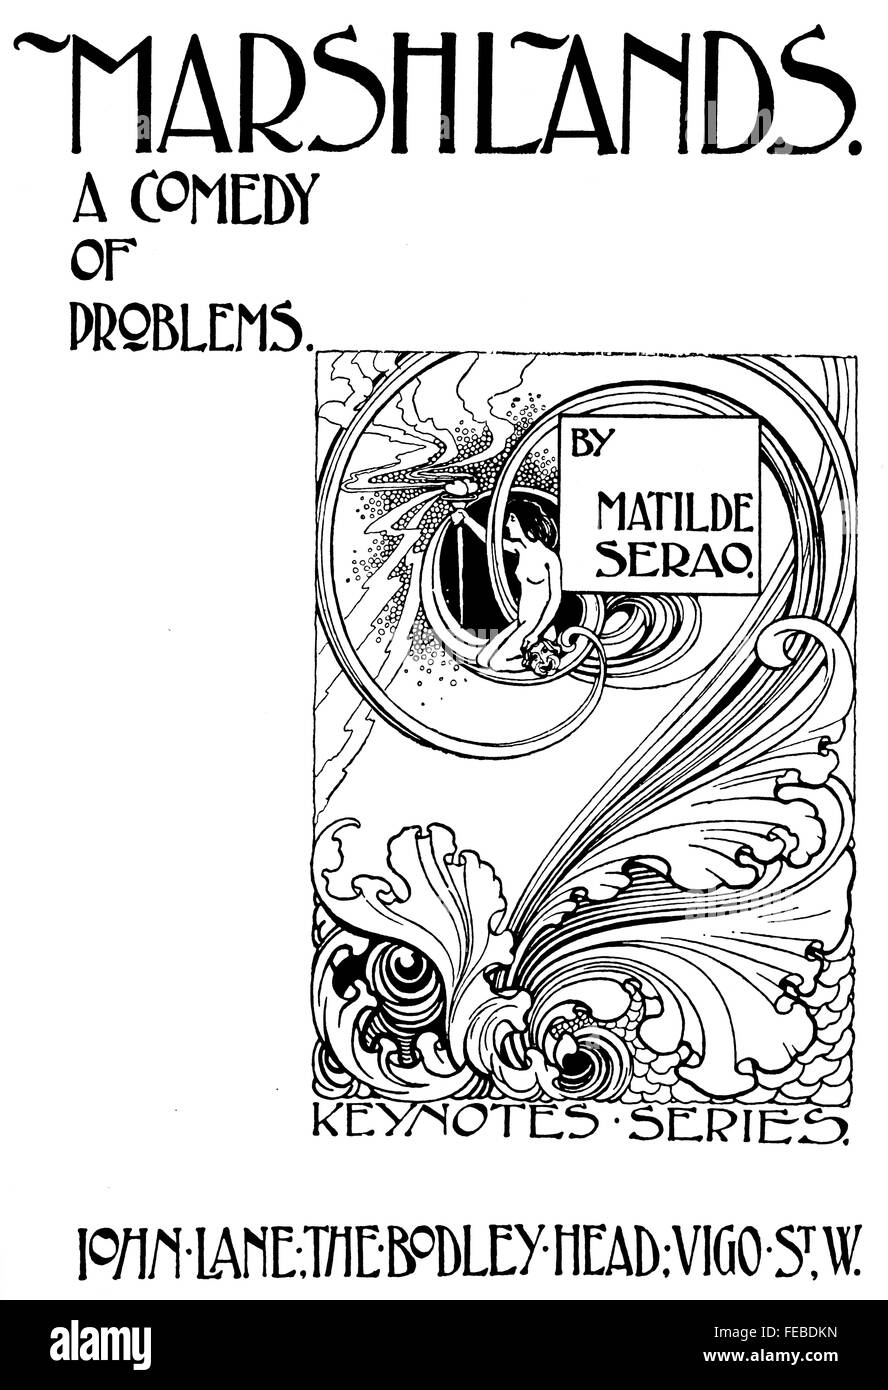 Paludi, una commedia di problemi, titolo di libro il design della pagina, da George M Ellwood di Londra, art nouveau illustrazione della linea 1897 Foto Stock